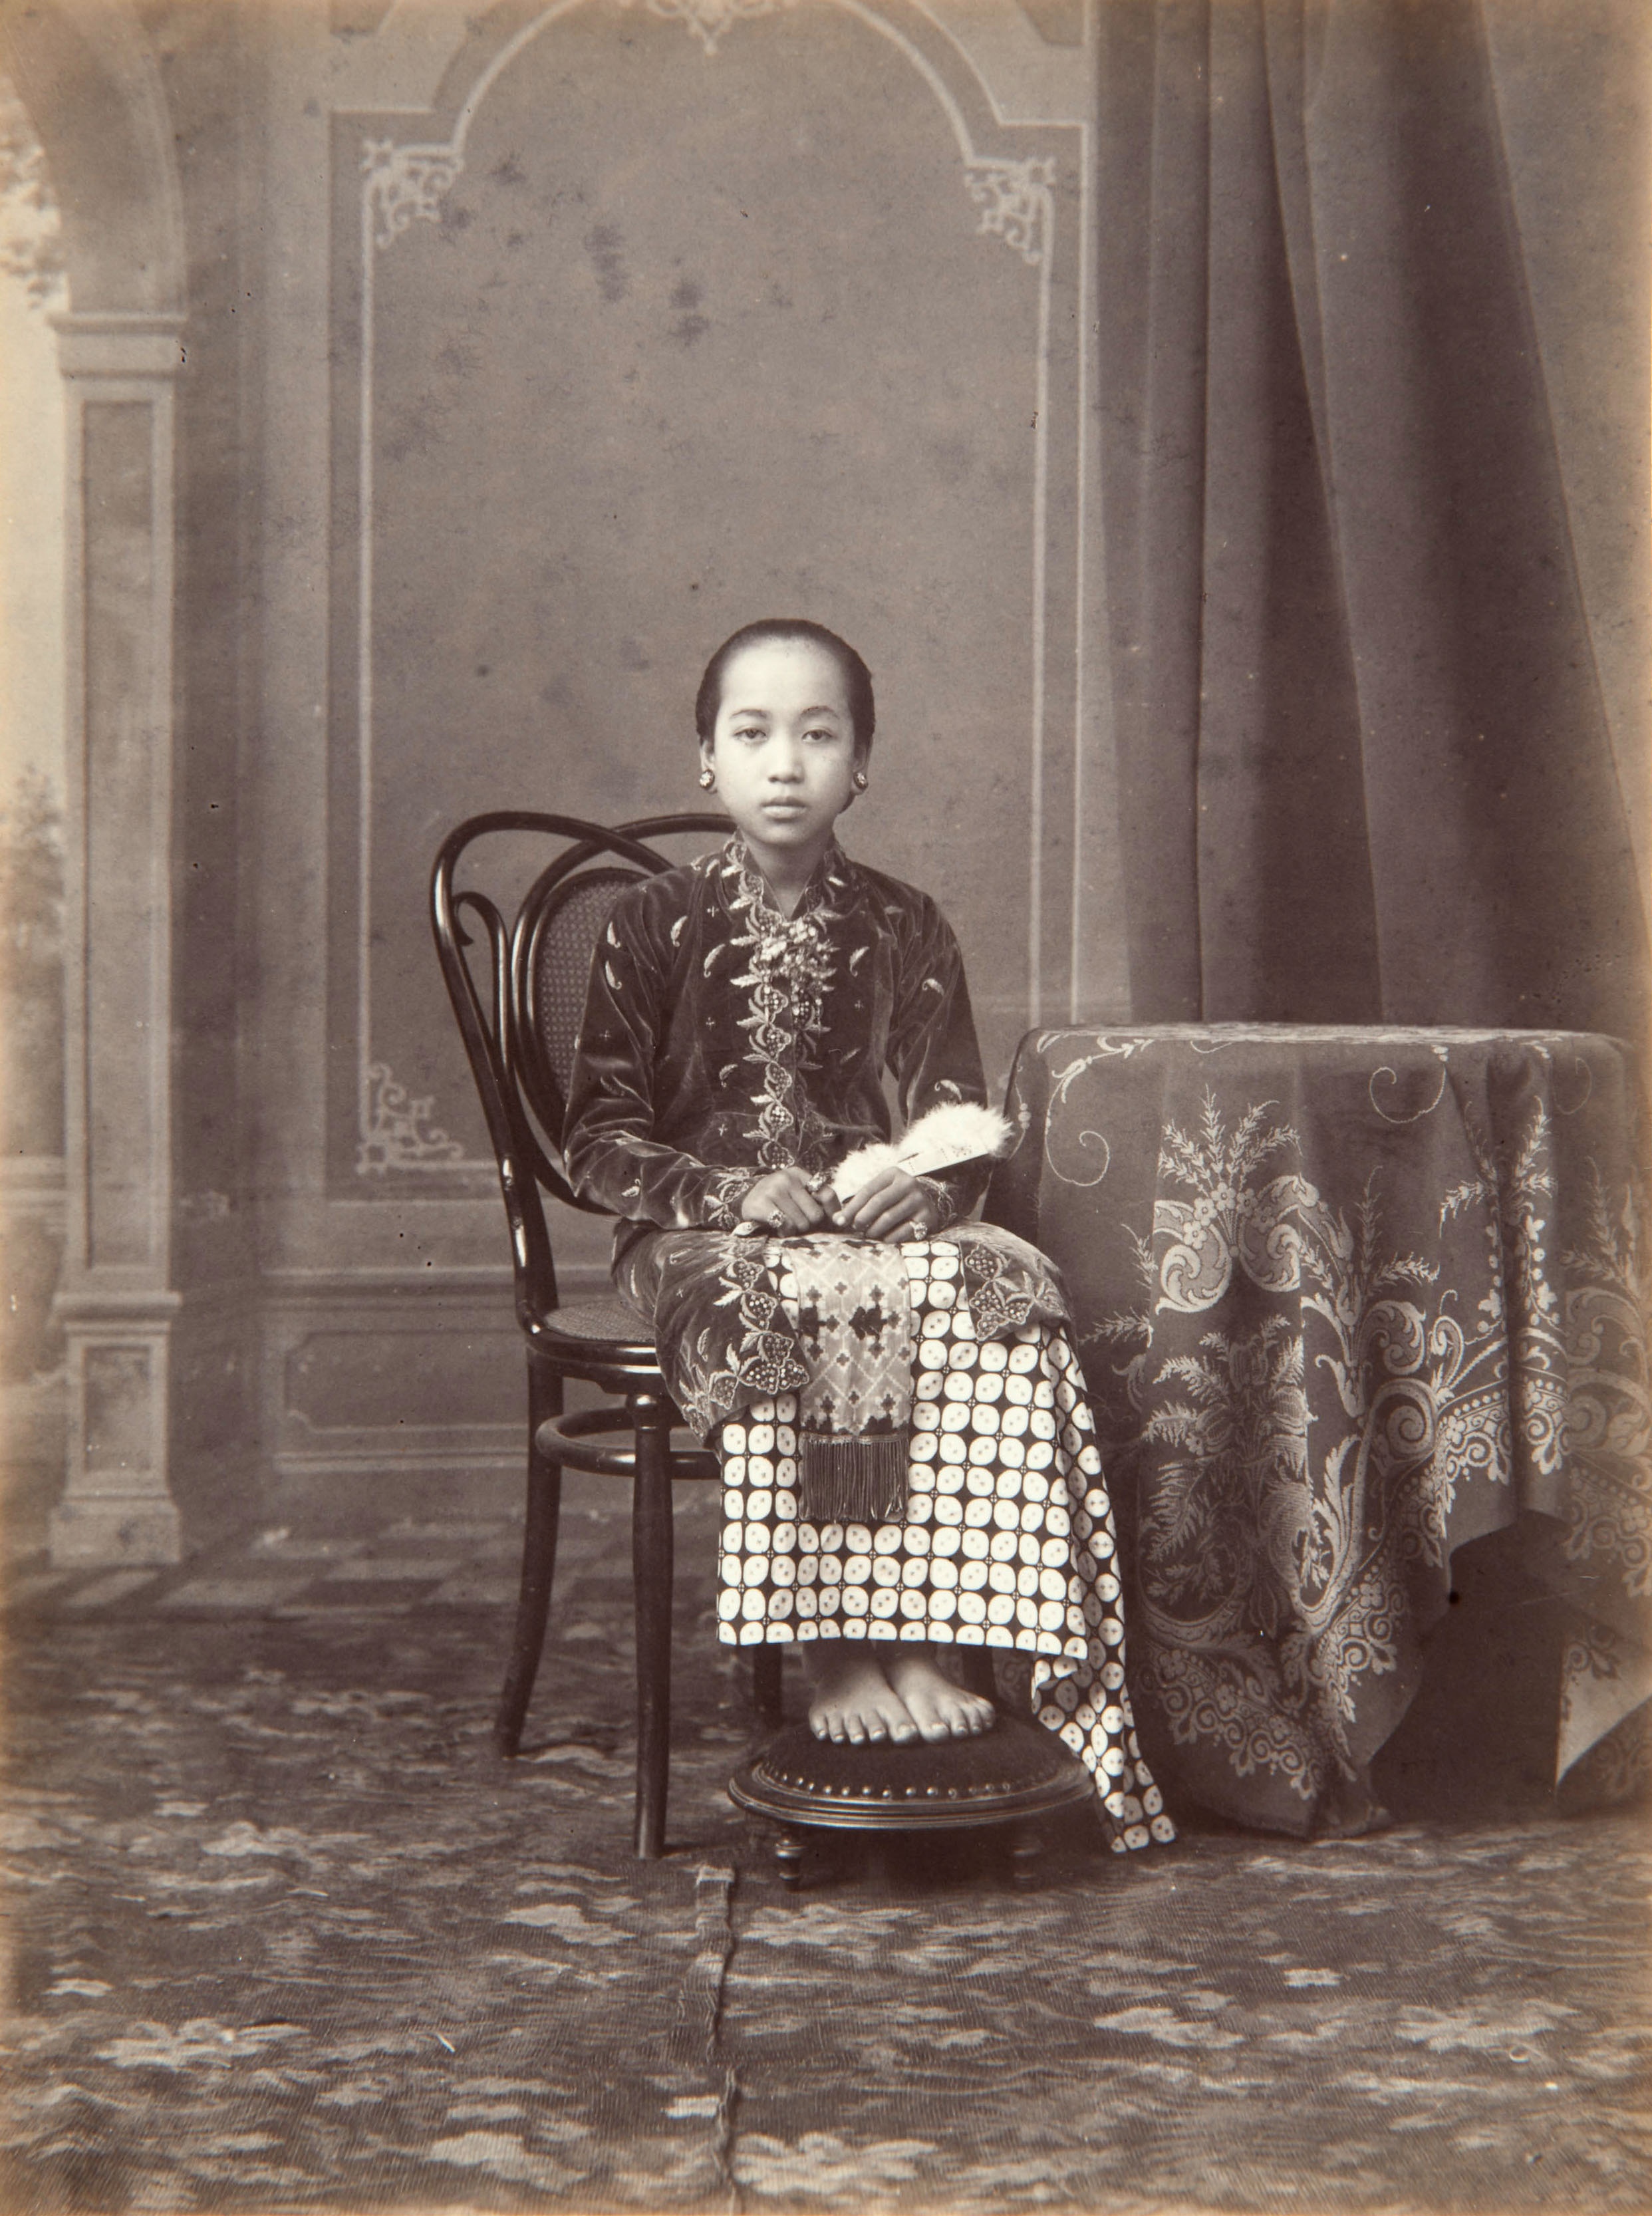 Studioportret van Gusti Raden Ayu Sekar Kedaton, dochter van Hamengku Buwono VII, de sultan van Yogyakarta. Zij draagt een kokerrok met kawung motief. Fotograaf: Kassian Céphas, 1880-1891. (TM-60001466)